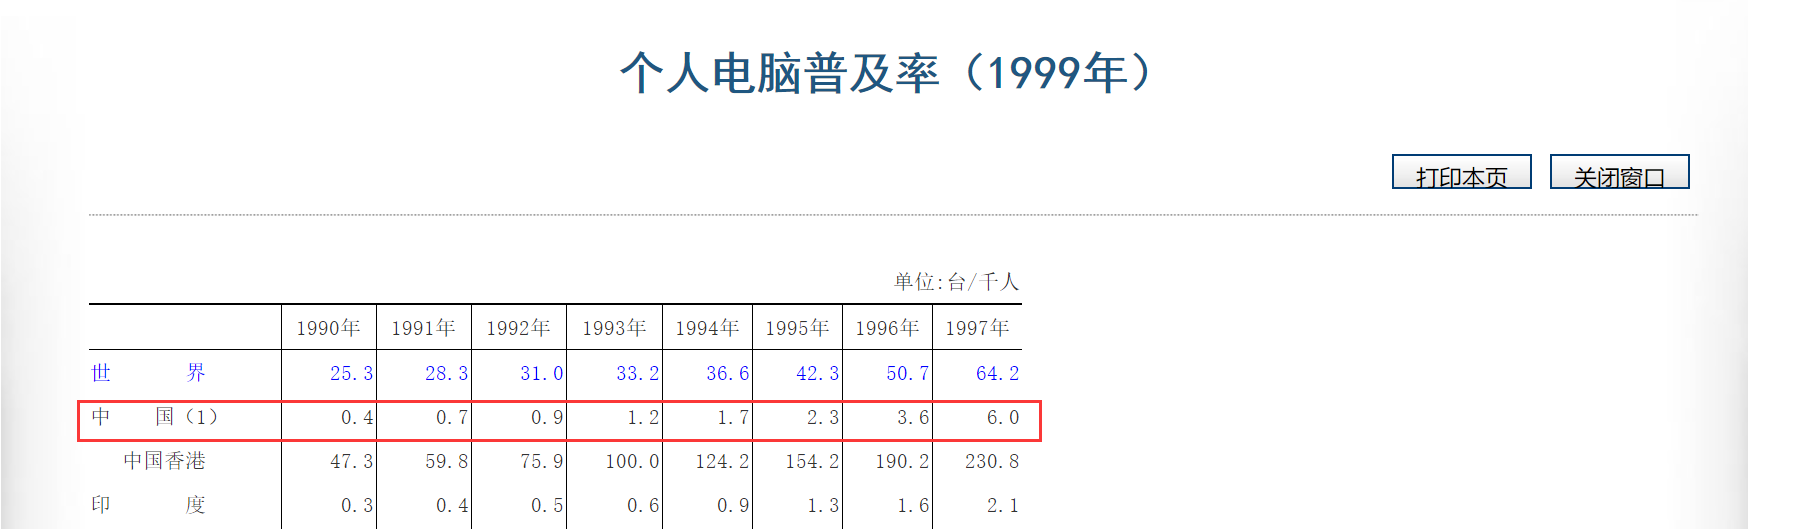 20世纪90年代中国个人电脑普及率极低（图片来源：国际统计年鉴1999）